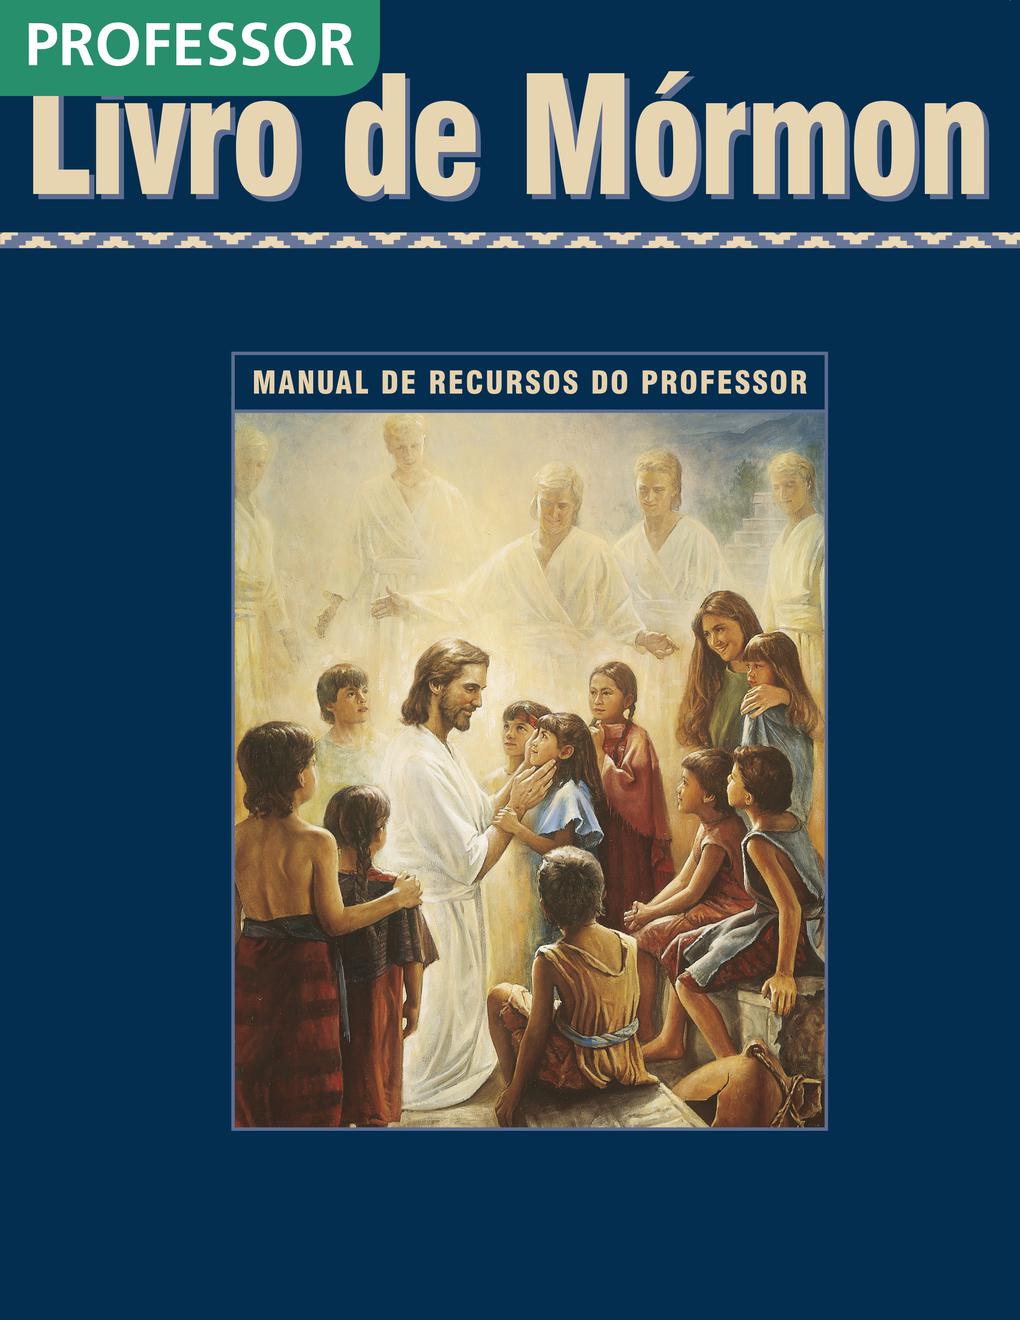 O Livro de Mórmon — Manual de Recursos do Professor do Seminário